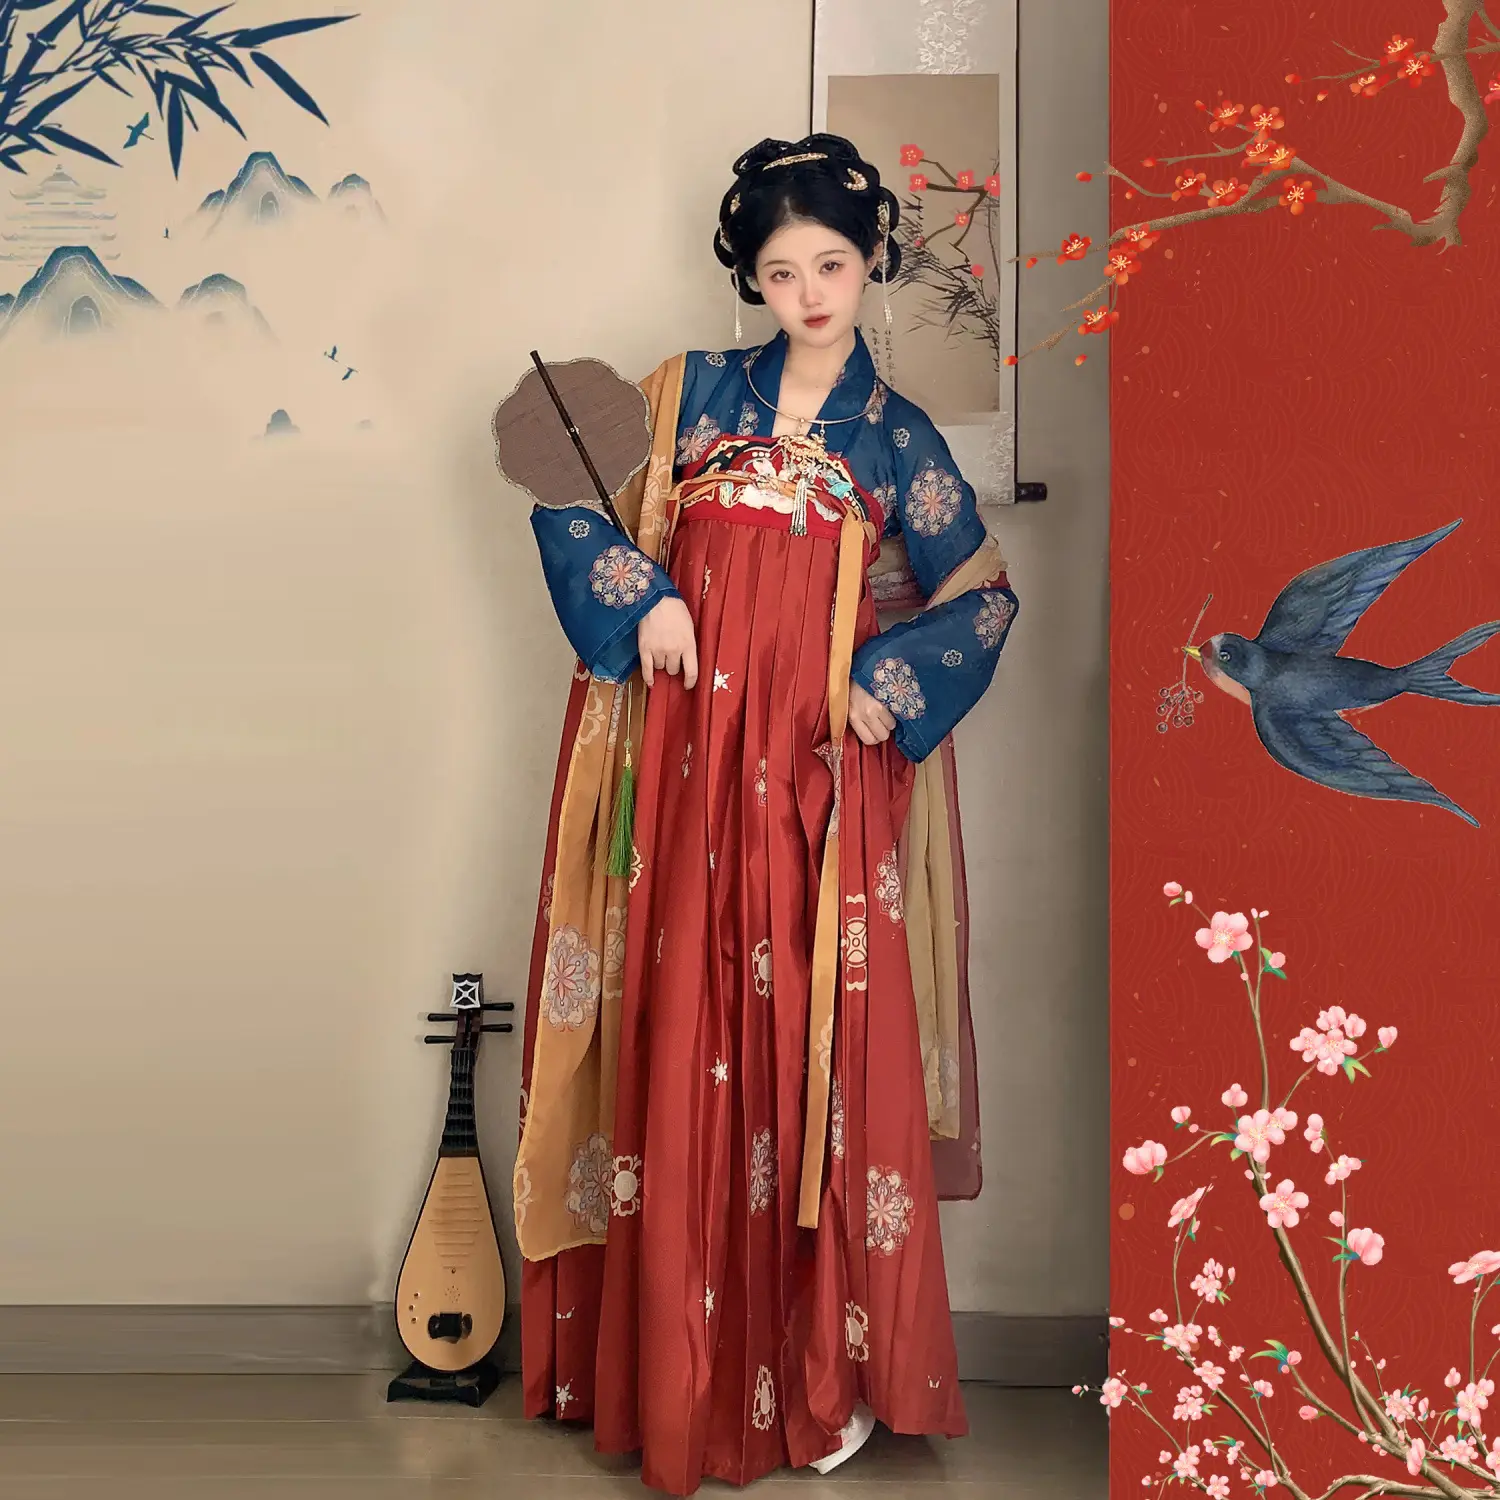 Mujeres Hanfu venta al por mayor hermoso readymade moderno modificado de una pieza chino tradicional mujeres Hanfu vestido para la venta ropa de mujer